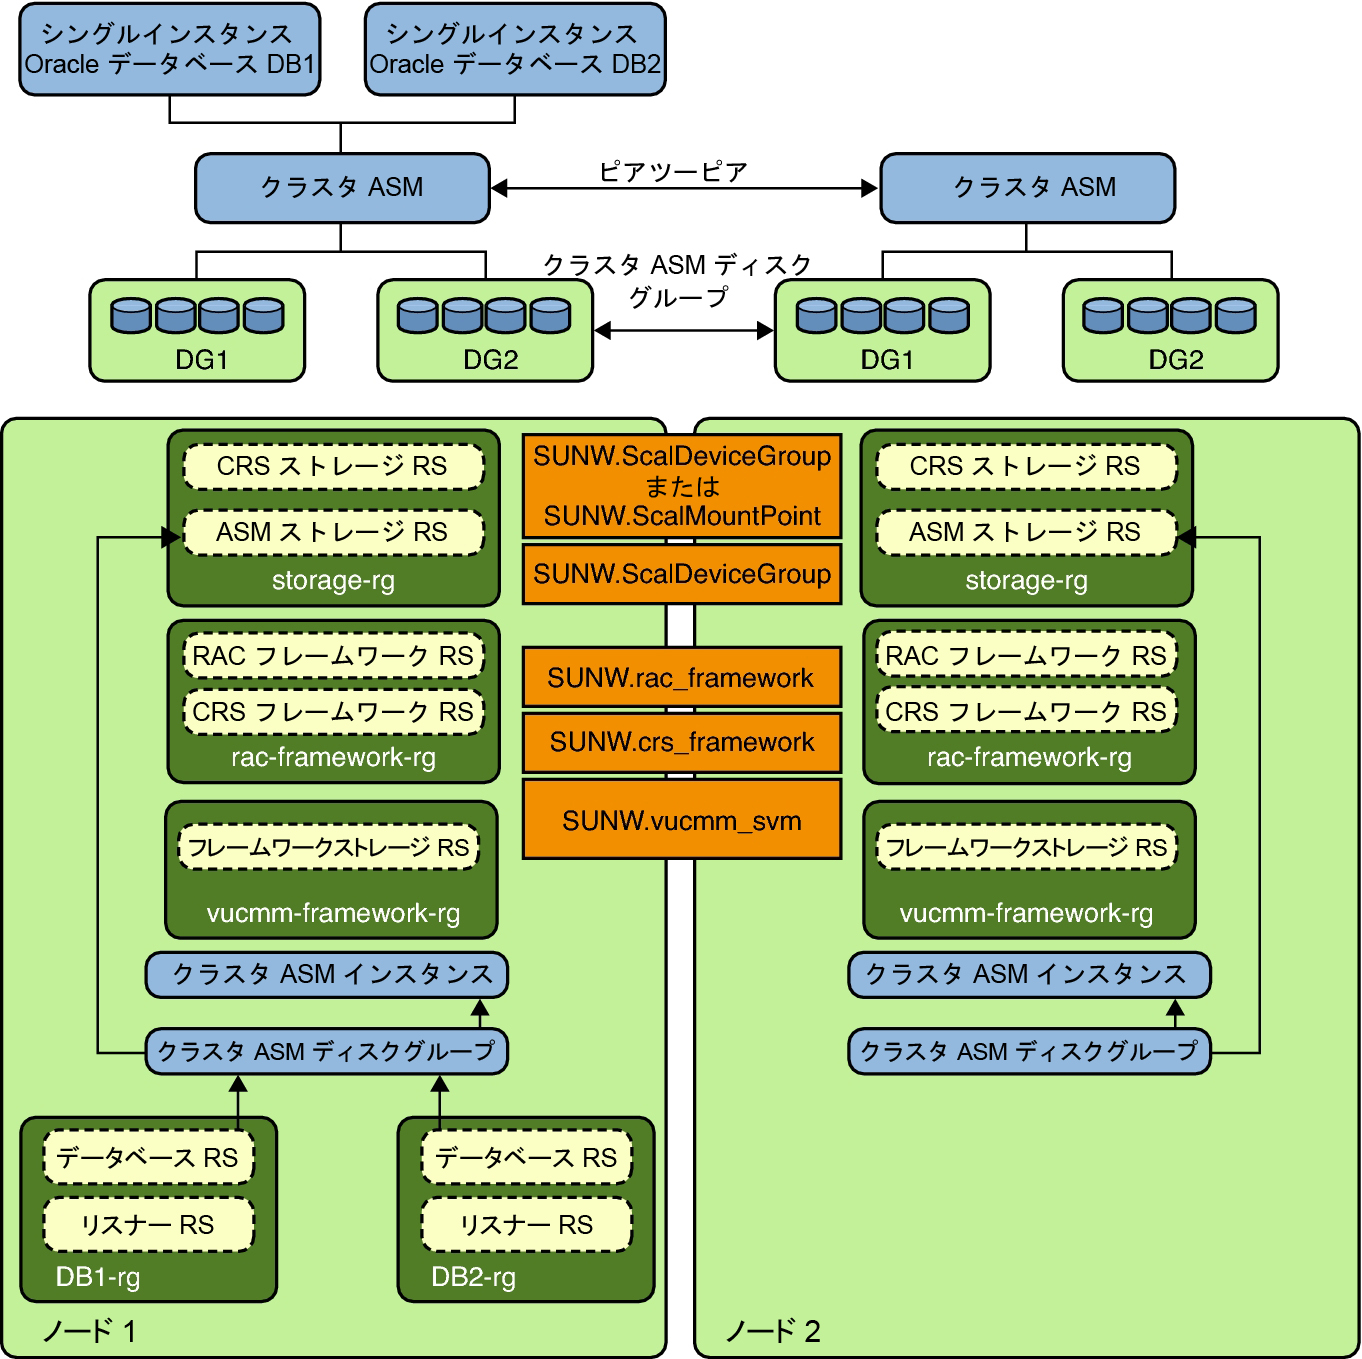 image:クラスタディスクグループ 1 を持つ Oracle ASM を示す図